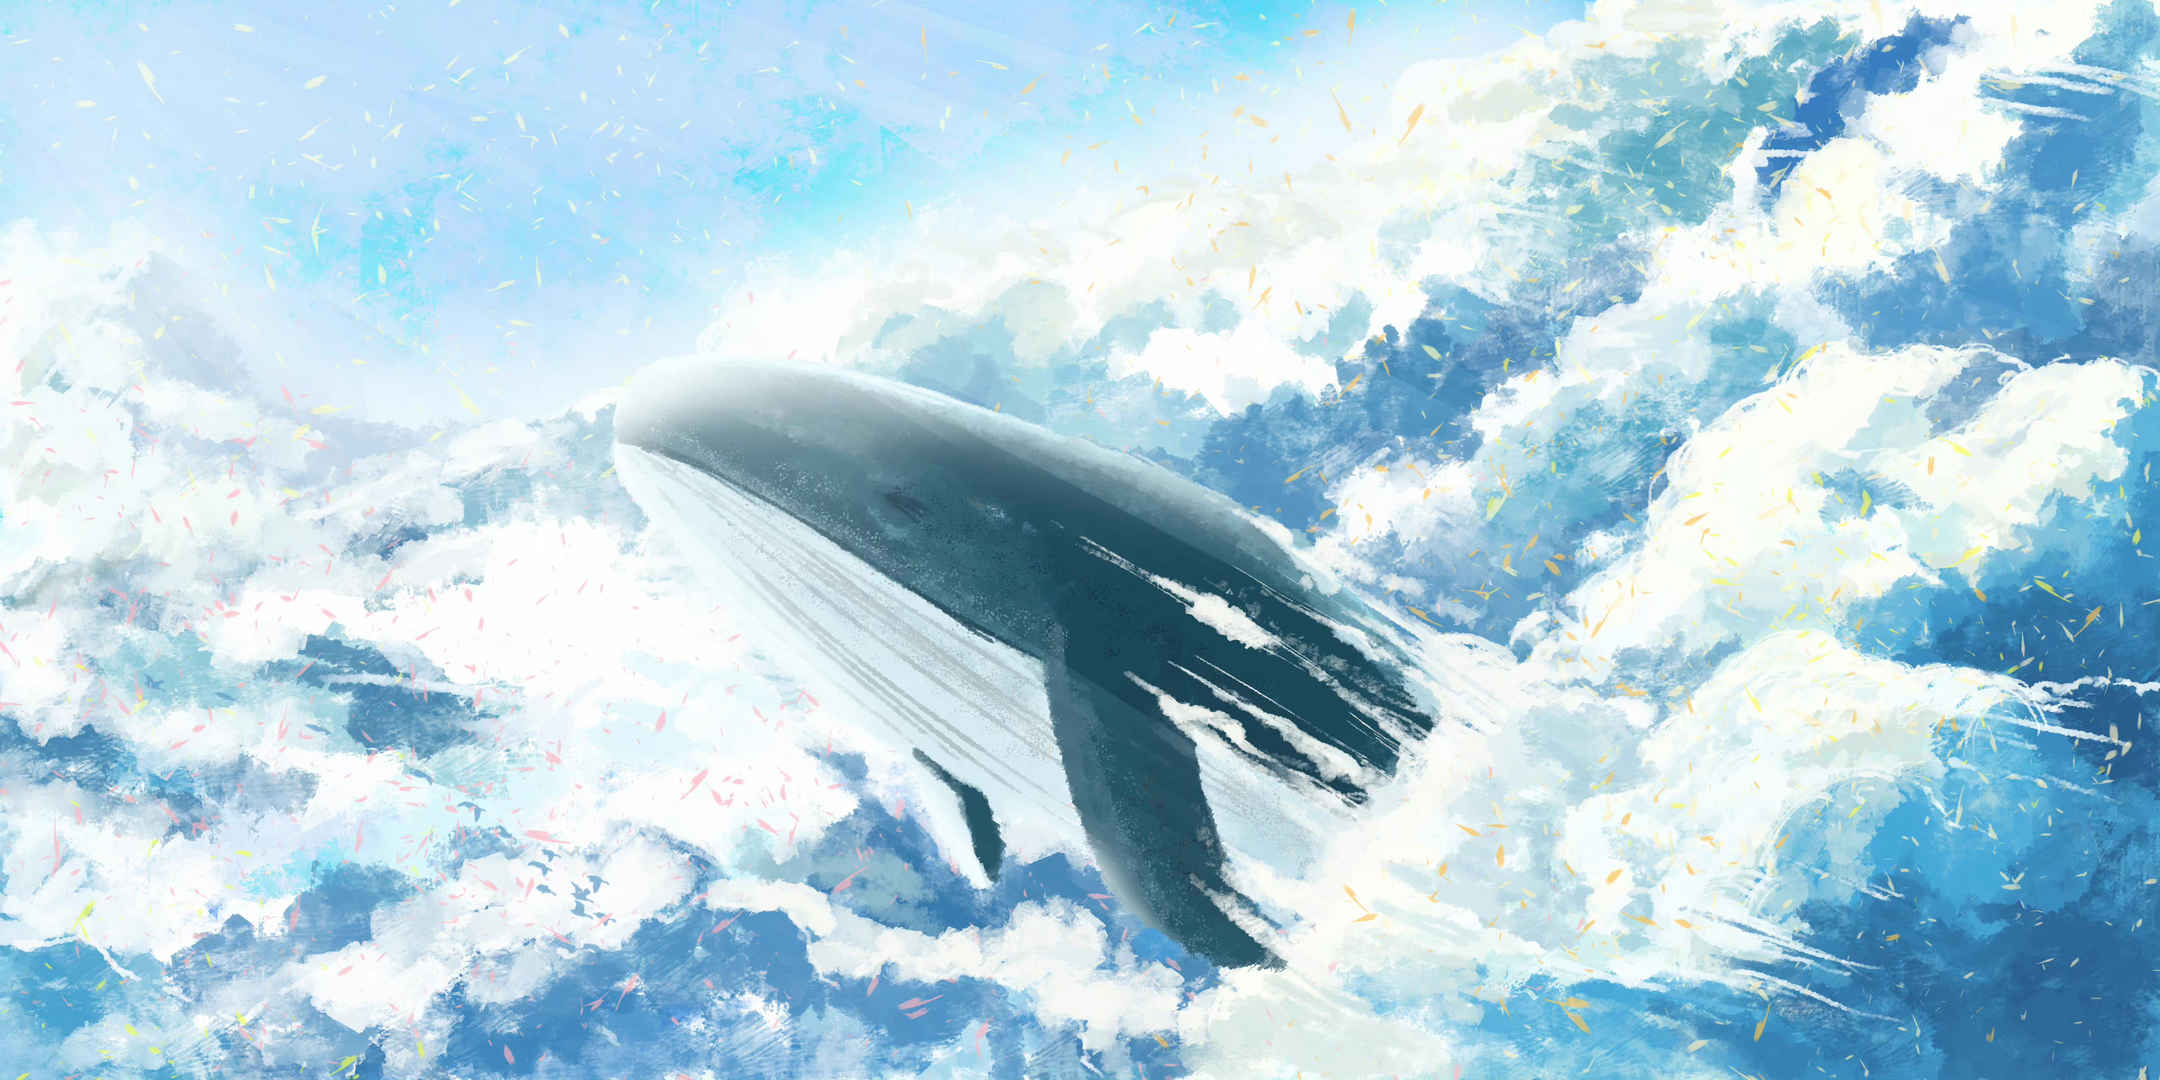 唯美梦幻手绘天空与鲸海报素材-